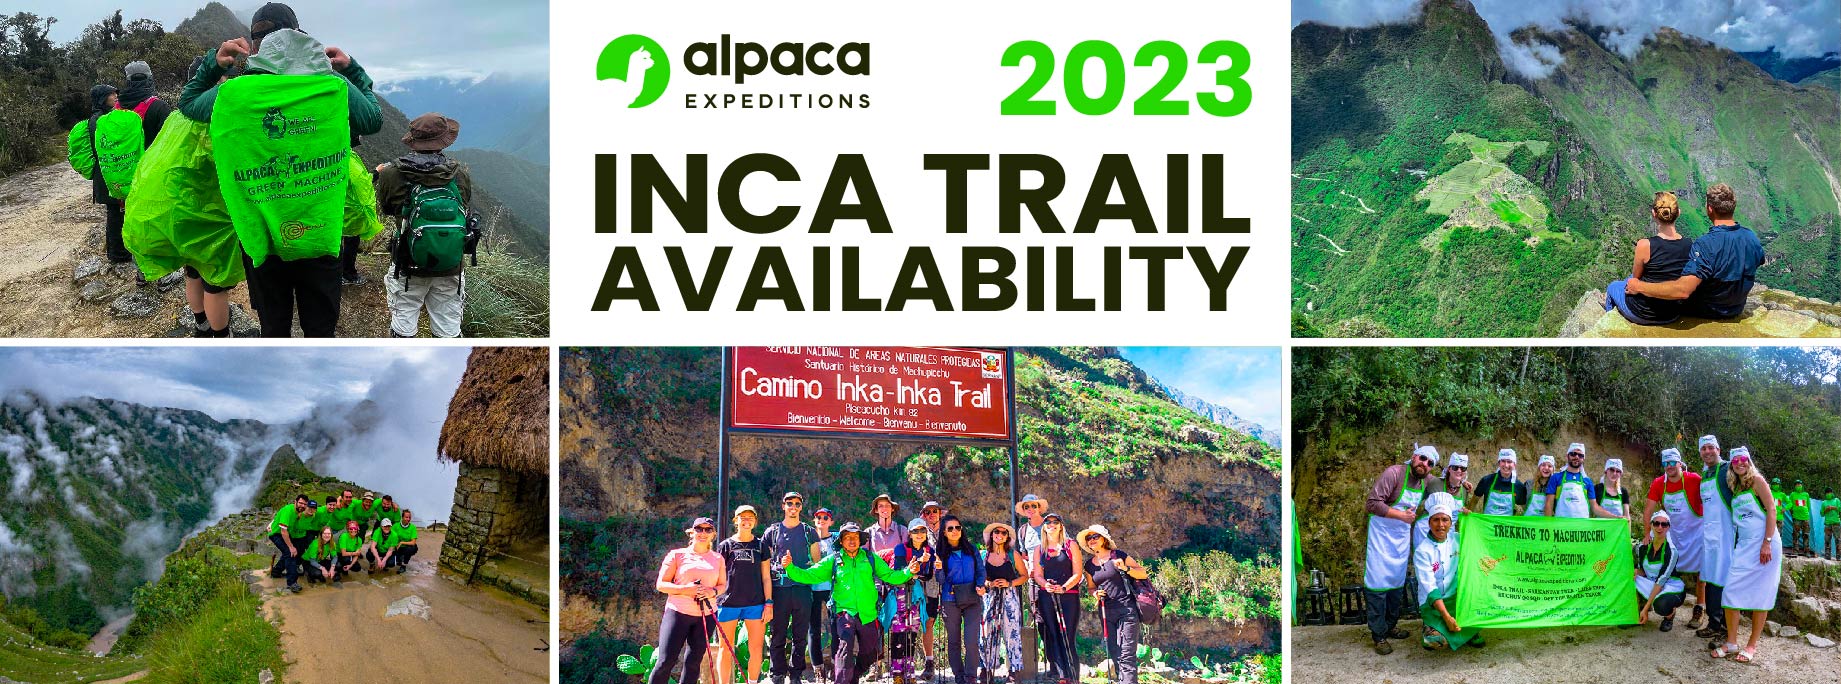 Inca trail availability 2023